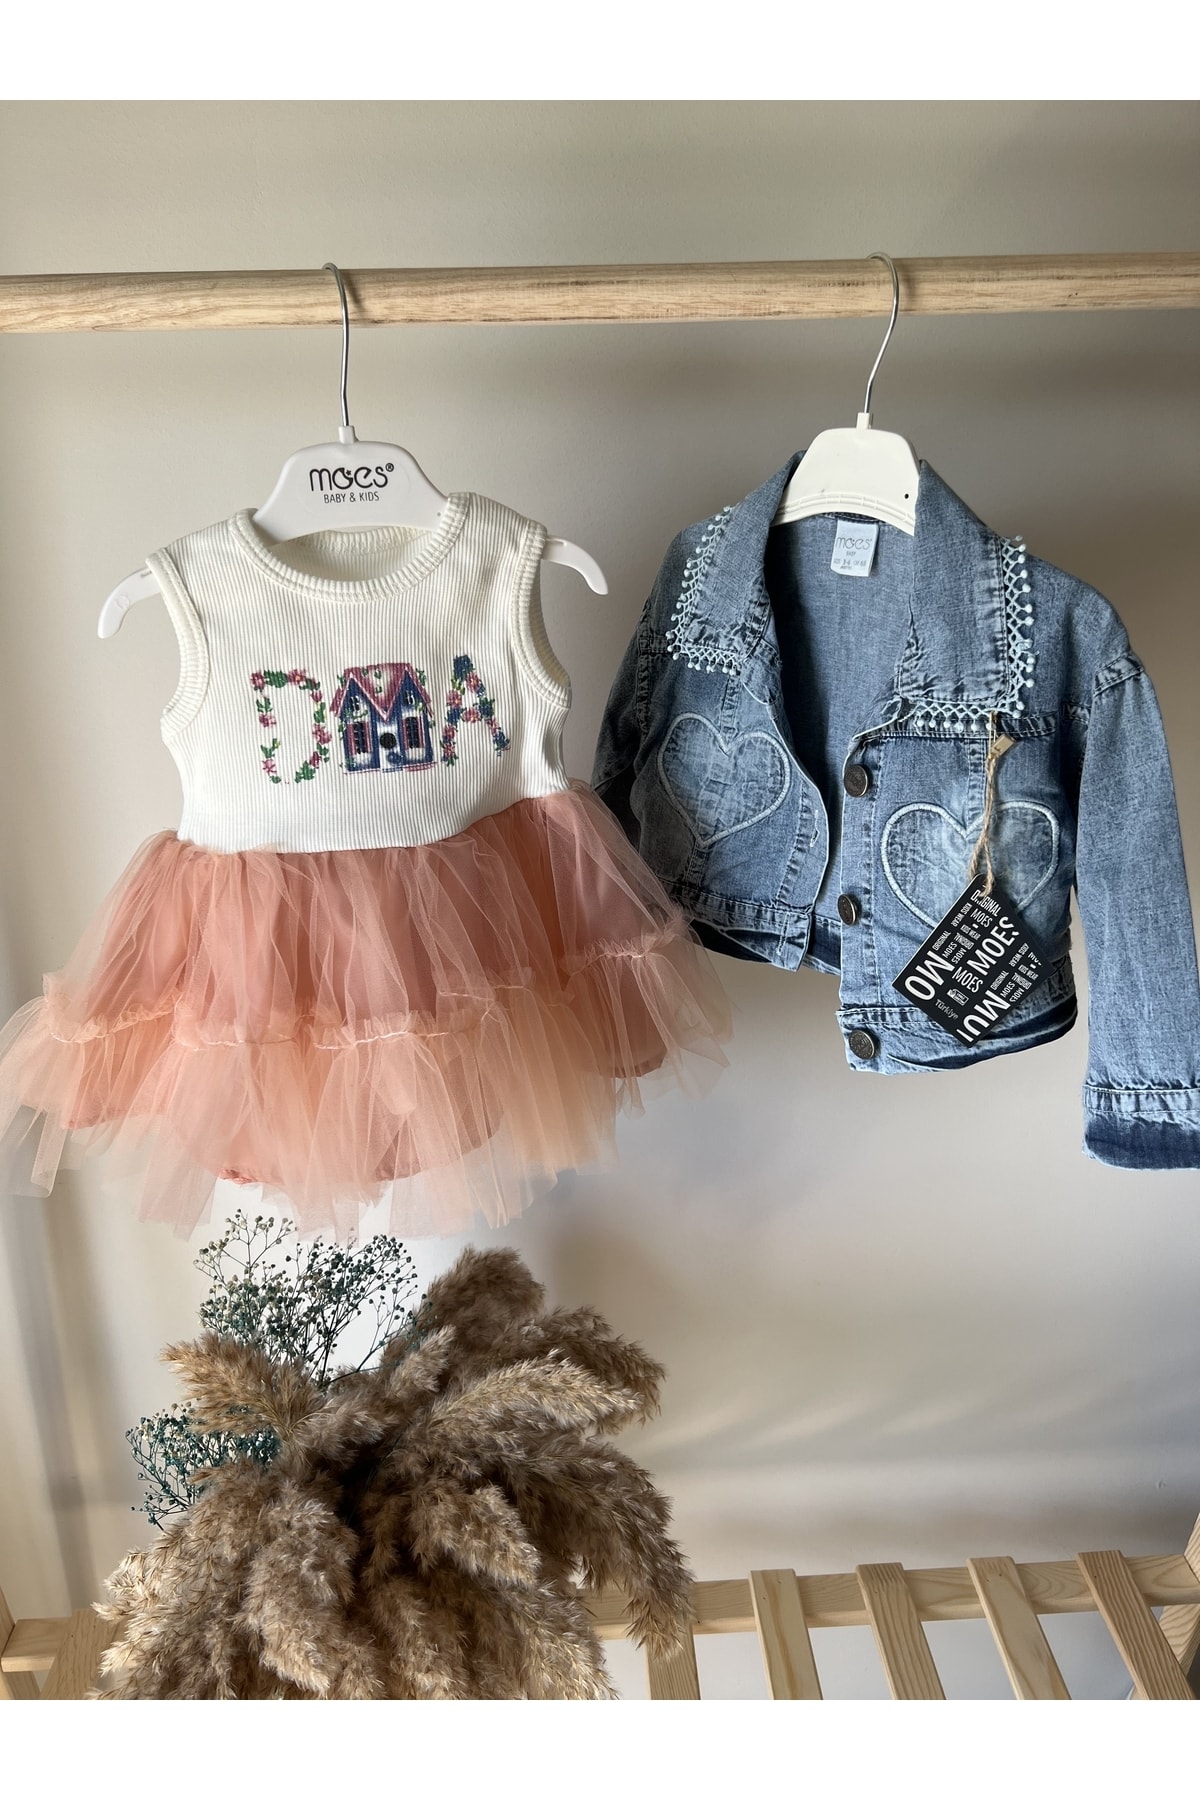 Moes Baby Kot Ceketli Tütülü Bebek Elbise Takımı